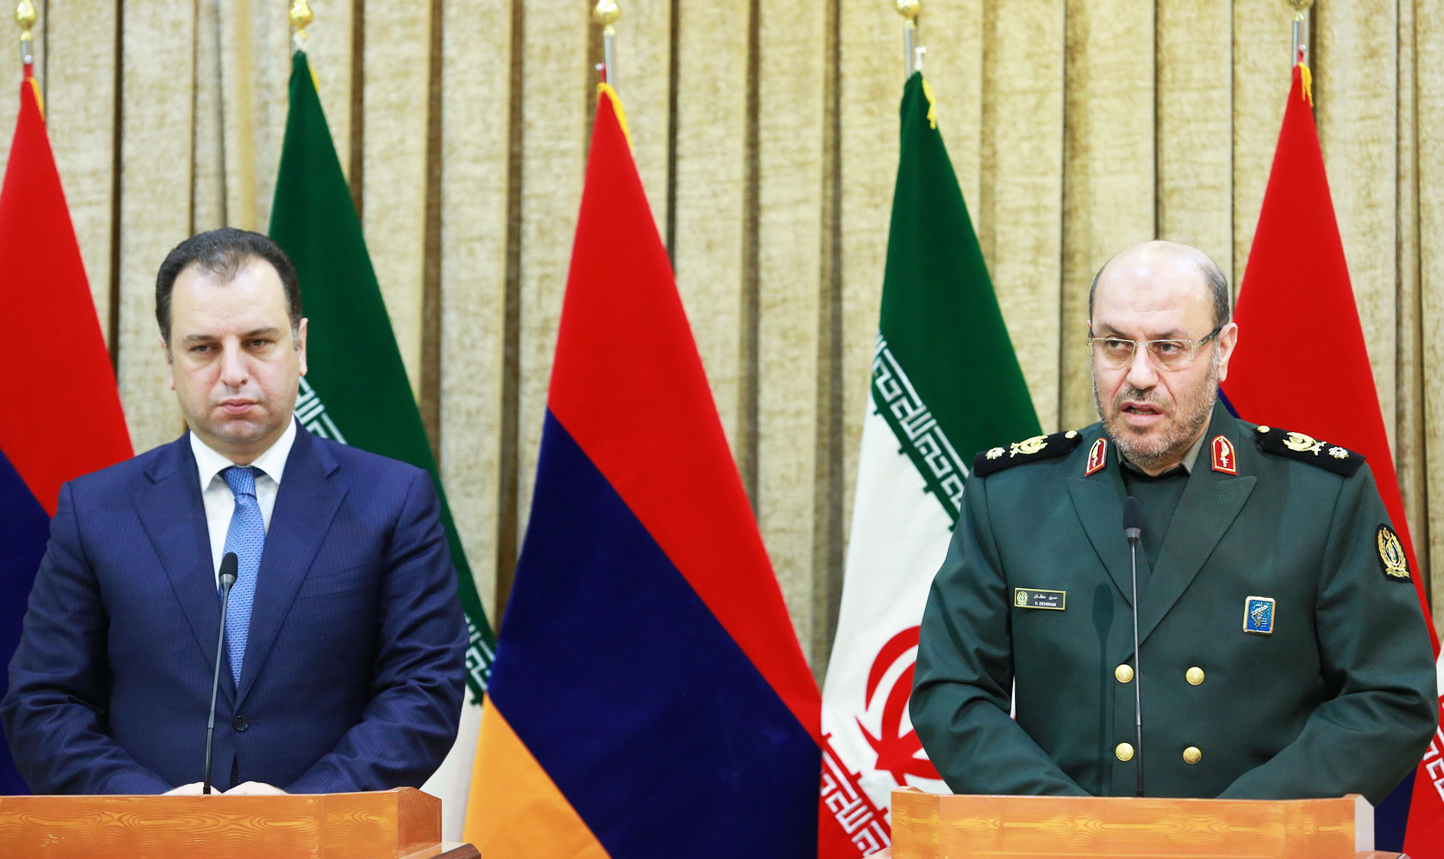 توسل به زور برای حل مشکلات منطقه مورد تأیید ایران نیست/ ارمنستان آماده همکاری با ایران در مبارزه با تروریسم است